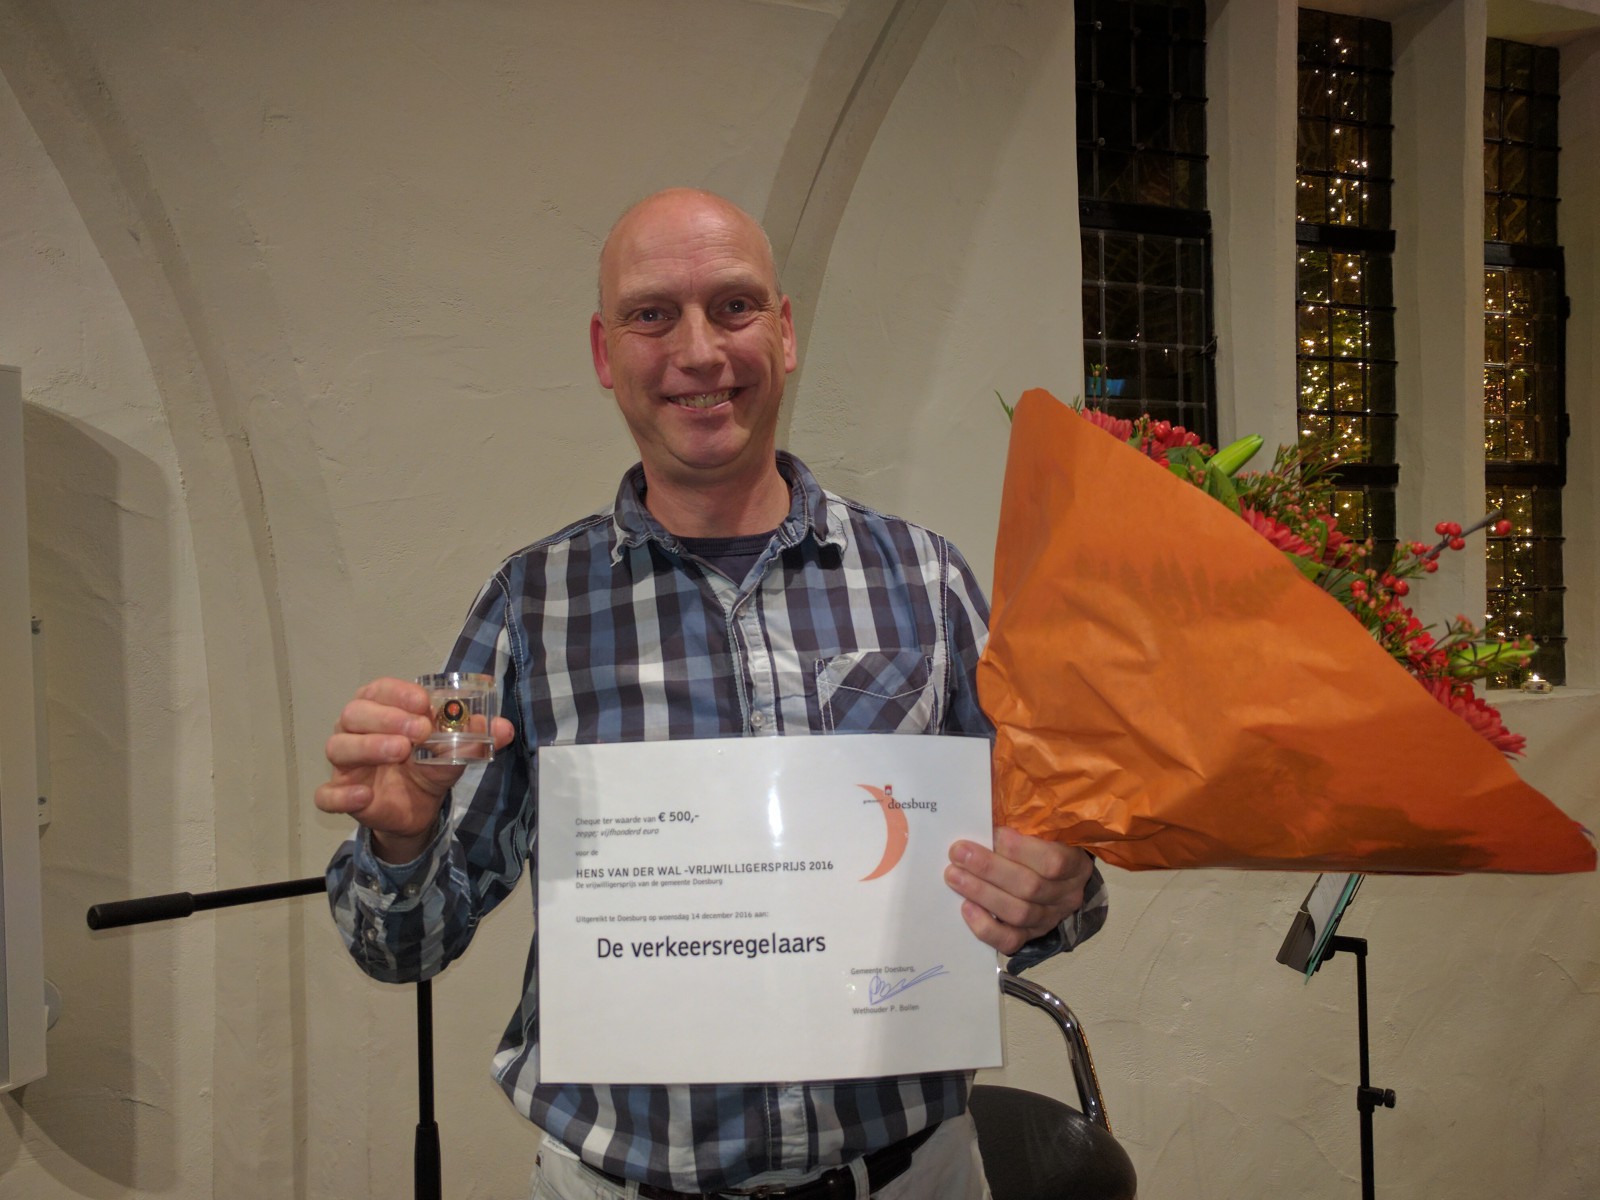 Hens van der Wal vrijwilligersprijs 2016 voor Verkeersregelaars Doesburg